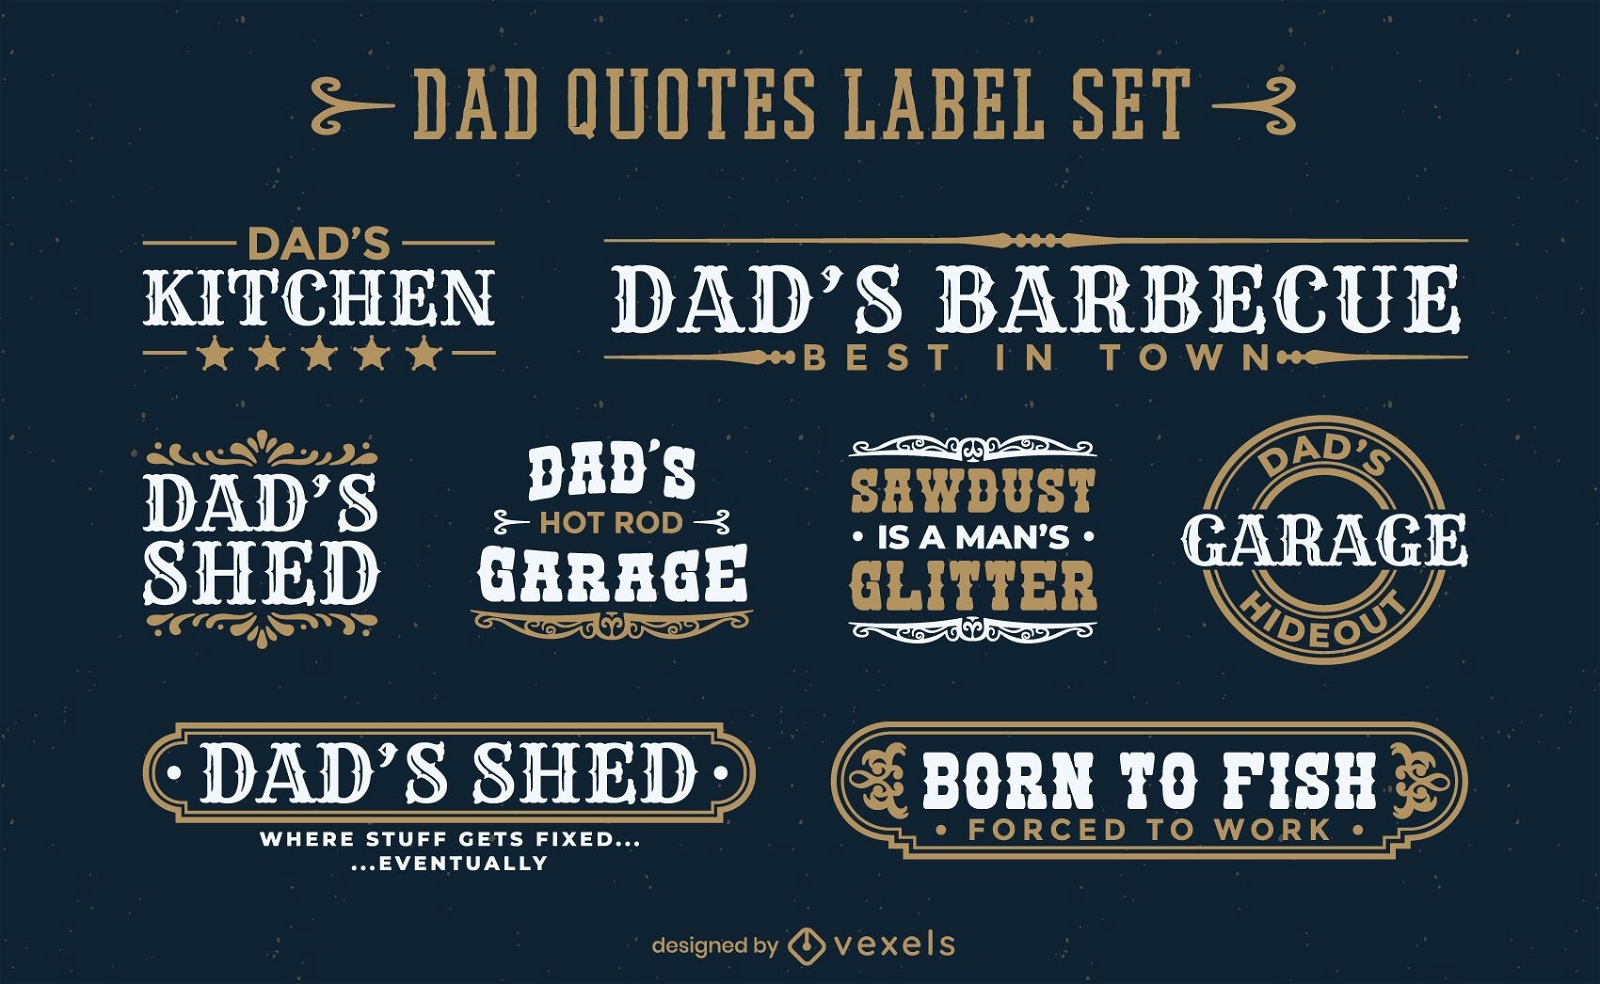 Dad's places quotes label set